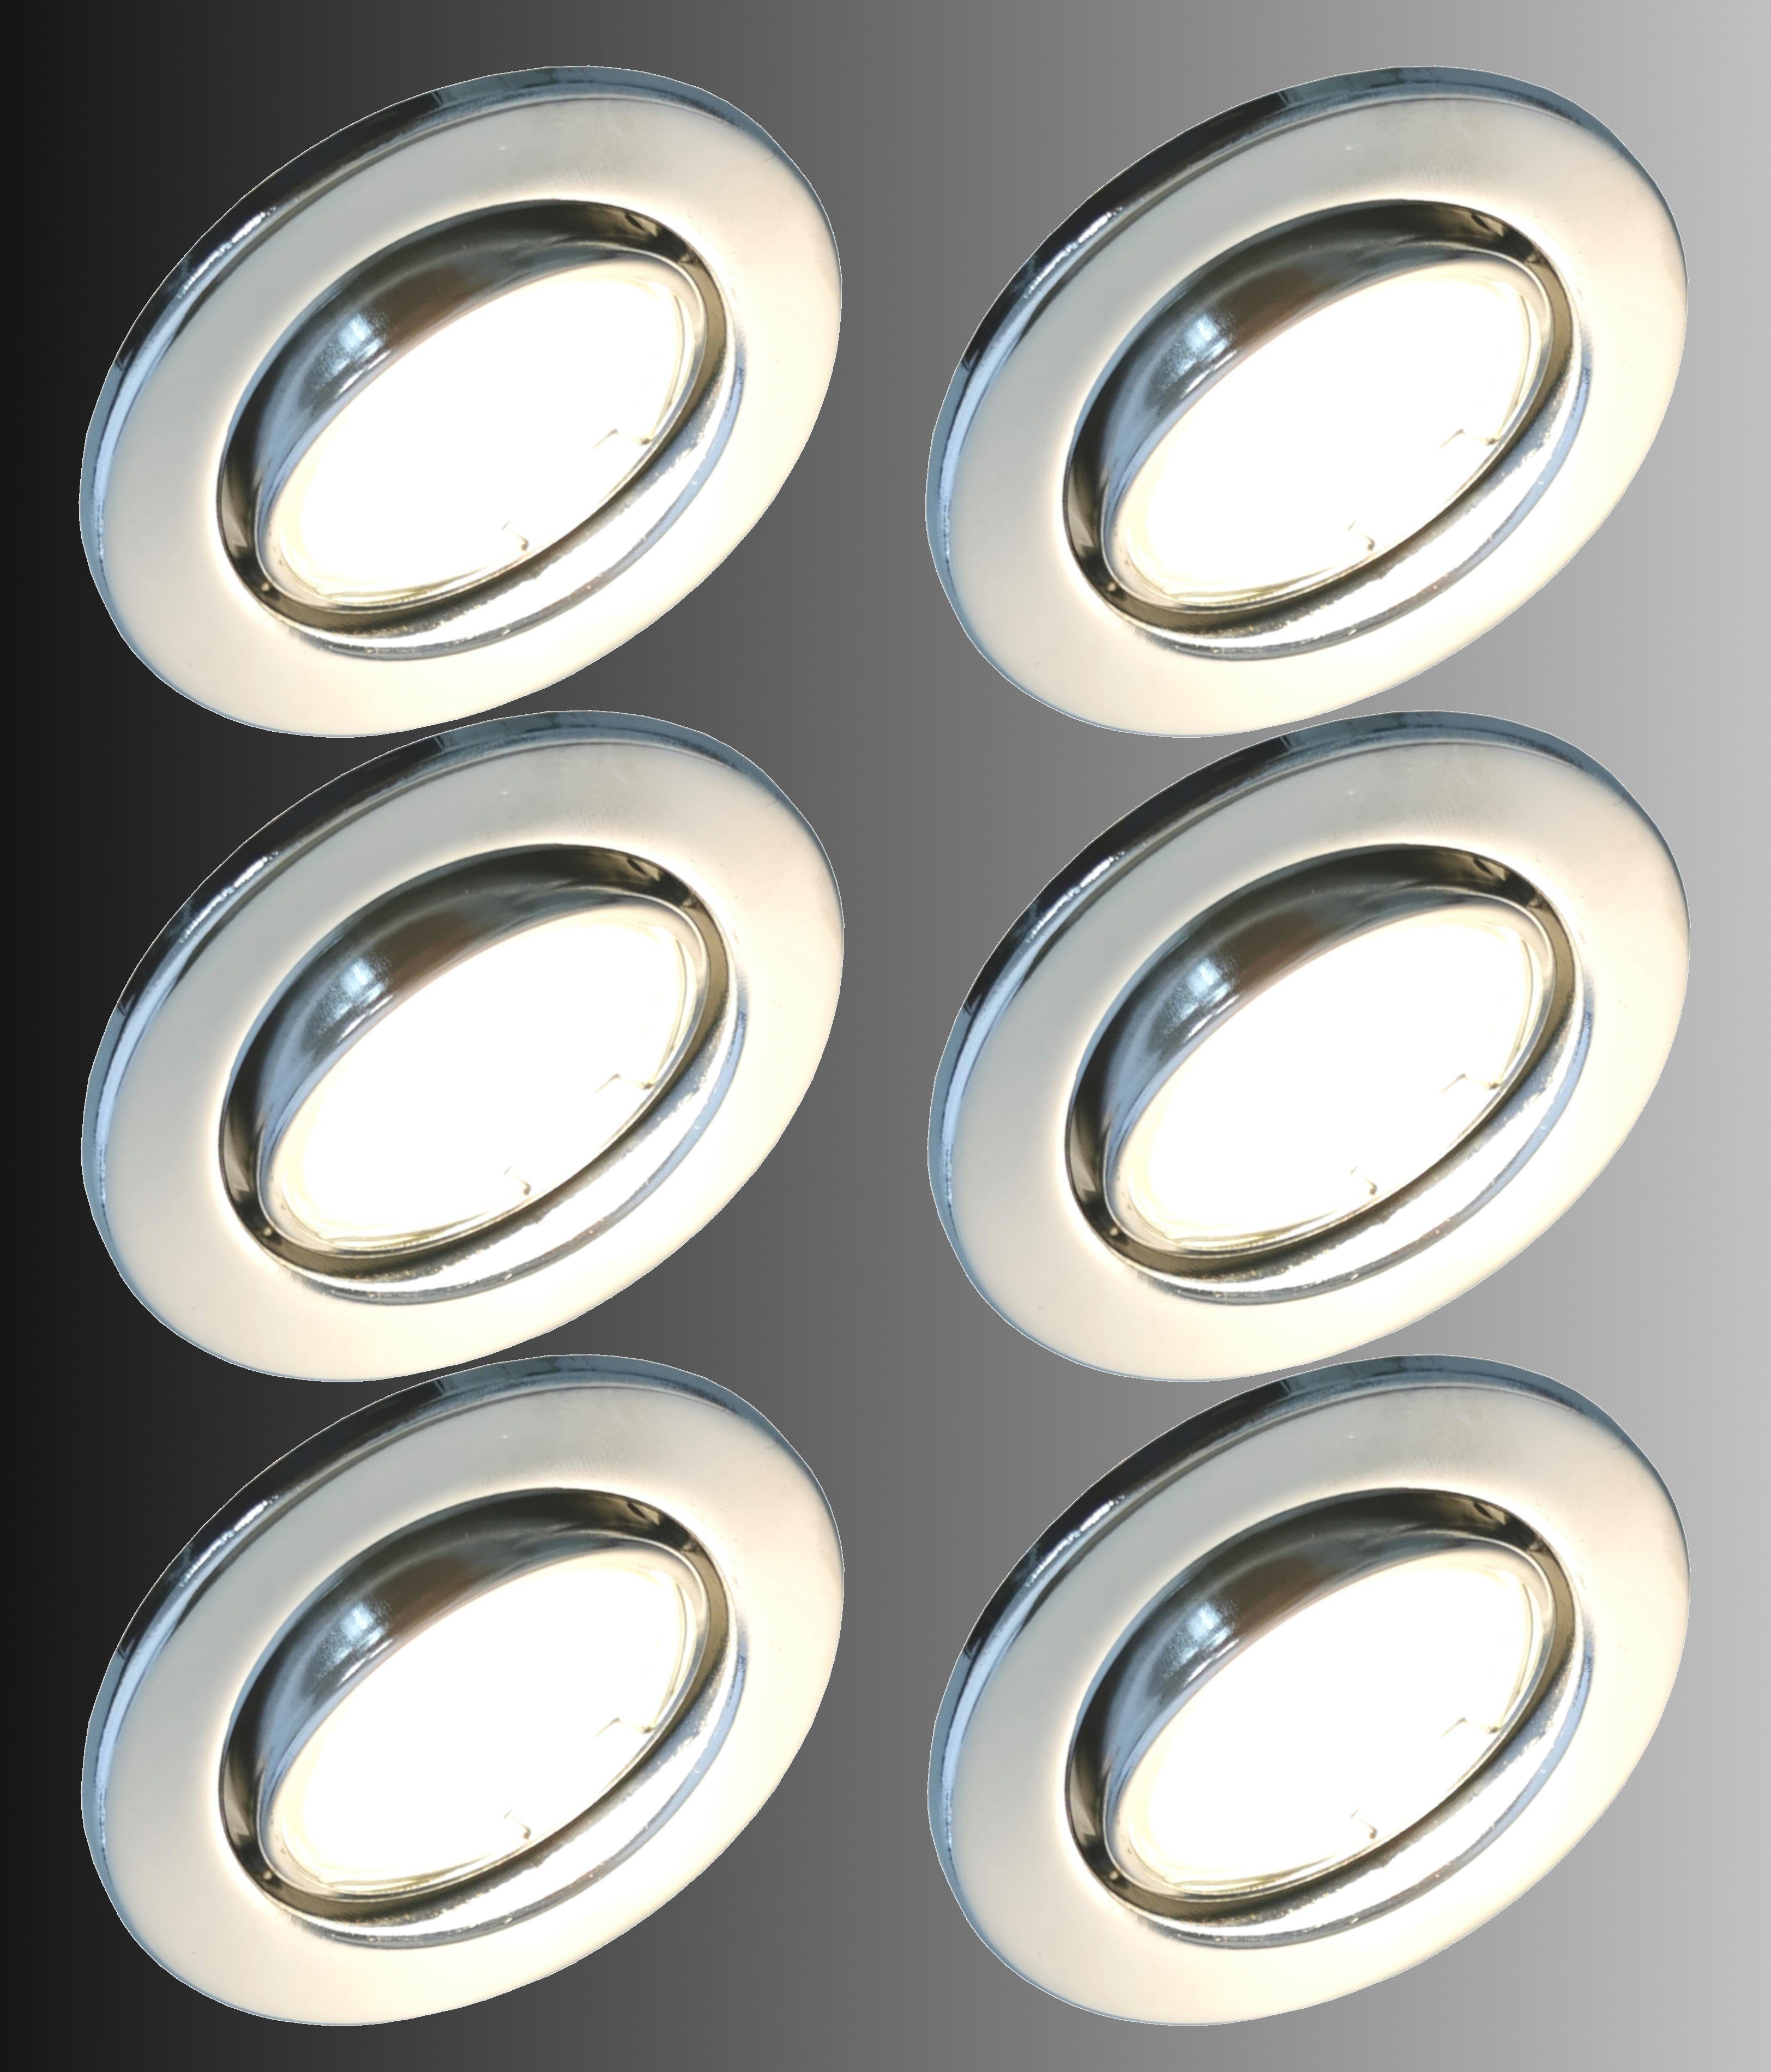 Ultra schwenkbar Deckenspot, Chrom-Optik inkl. Modul, 6729-068MCOB Flach 3000K Deckenleuchte, Einbauleuchte, Badleuchte, Einbauspots, Downlight LED in Einbaustrahler TRANGO Deckenlampe, 6er Deckenstrahler, 6x warmweiß LED LED Set Spots,